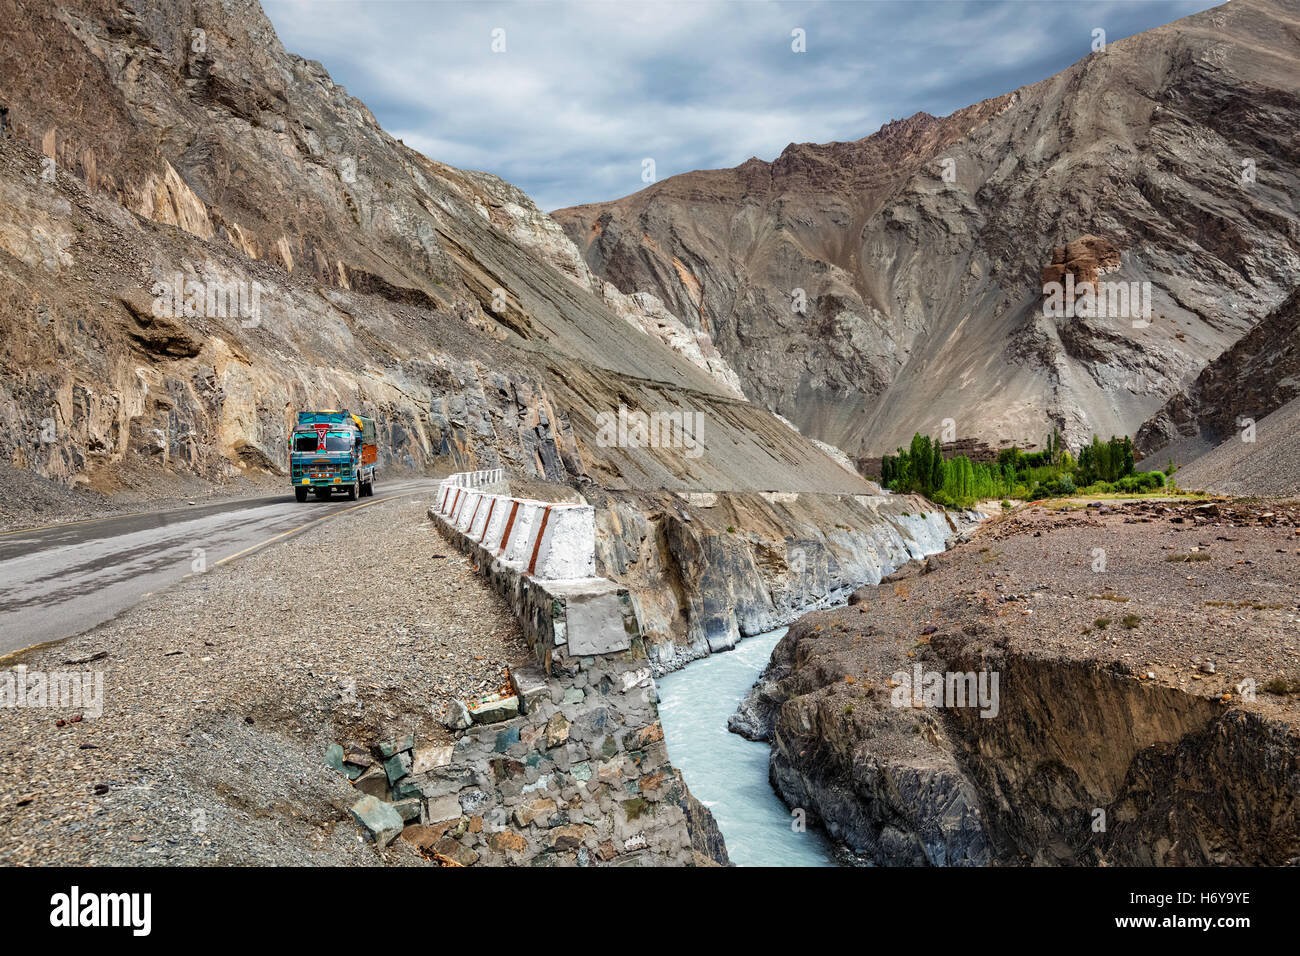 Indische LKW-LKW auf der Autobahn im Himalaya. Ladakh, Indien Stockfoto